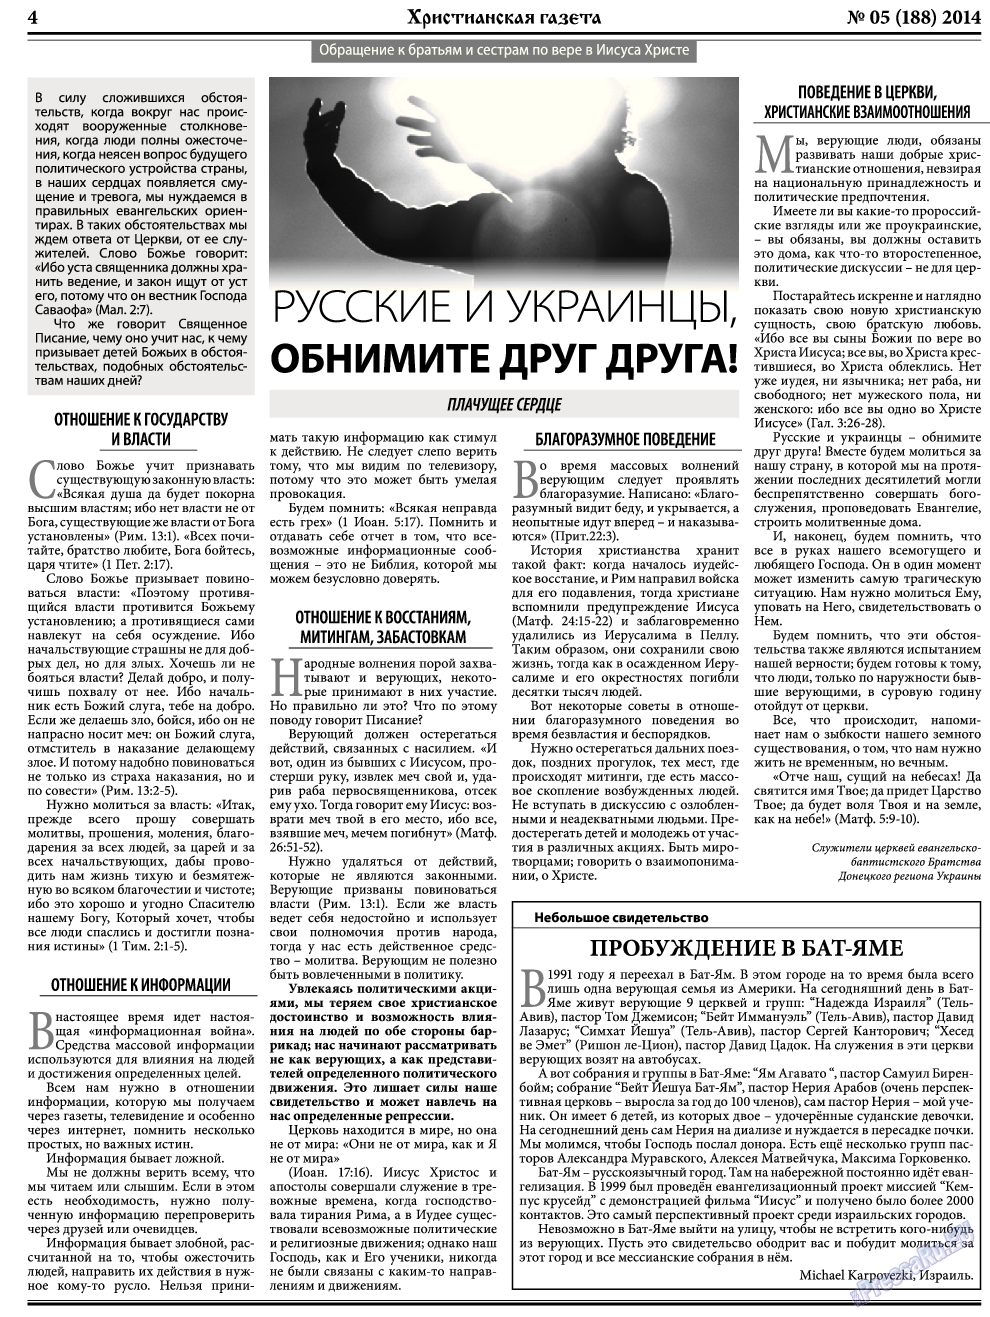 Христианская газета, газета. 2014 №5 стр.4